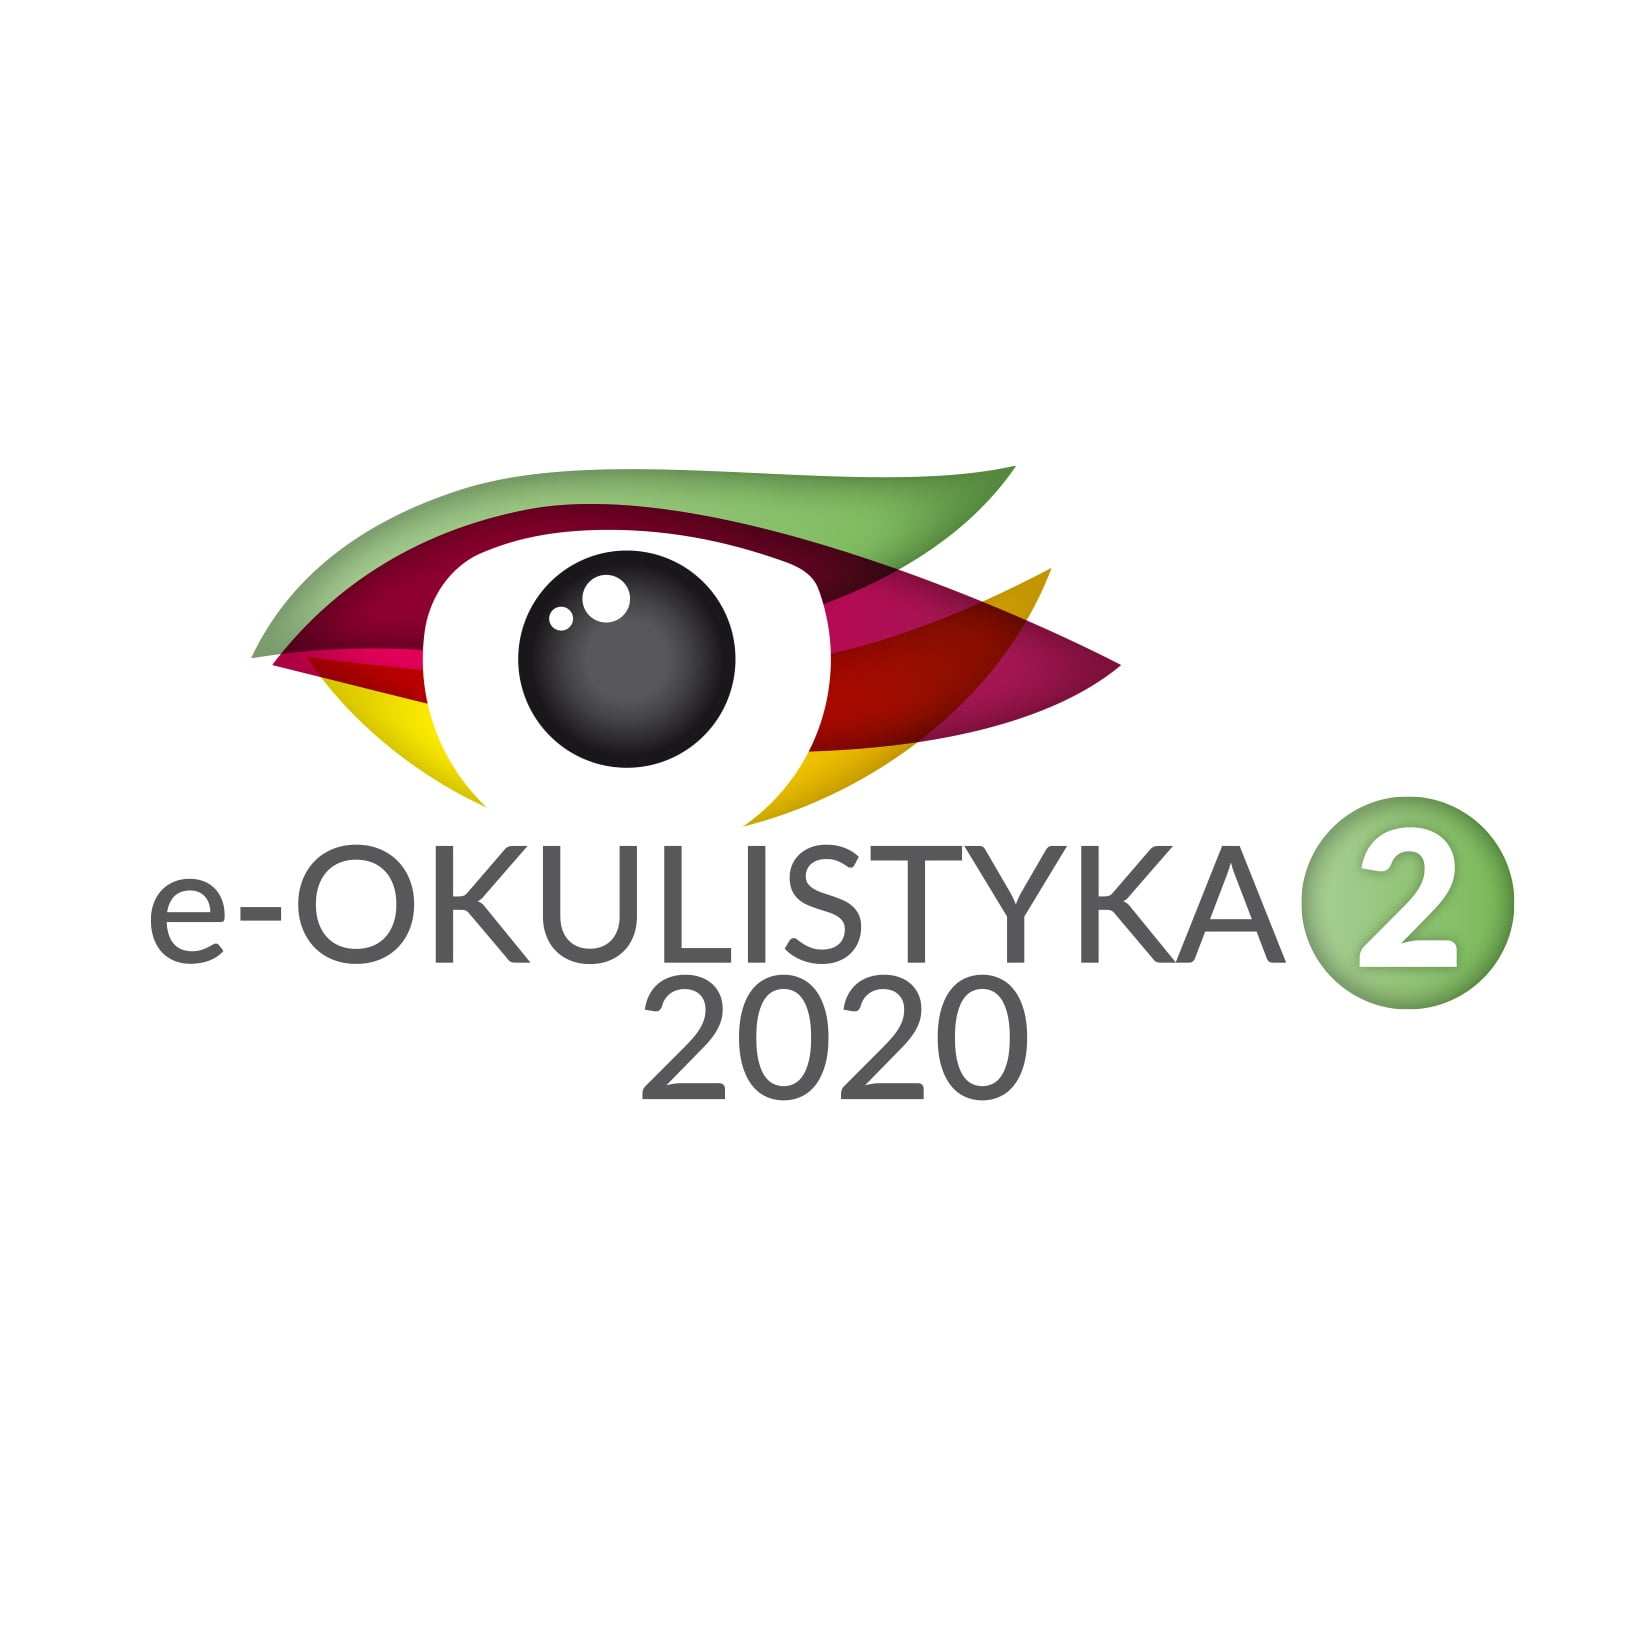 e-Okulistyka 2 2020